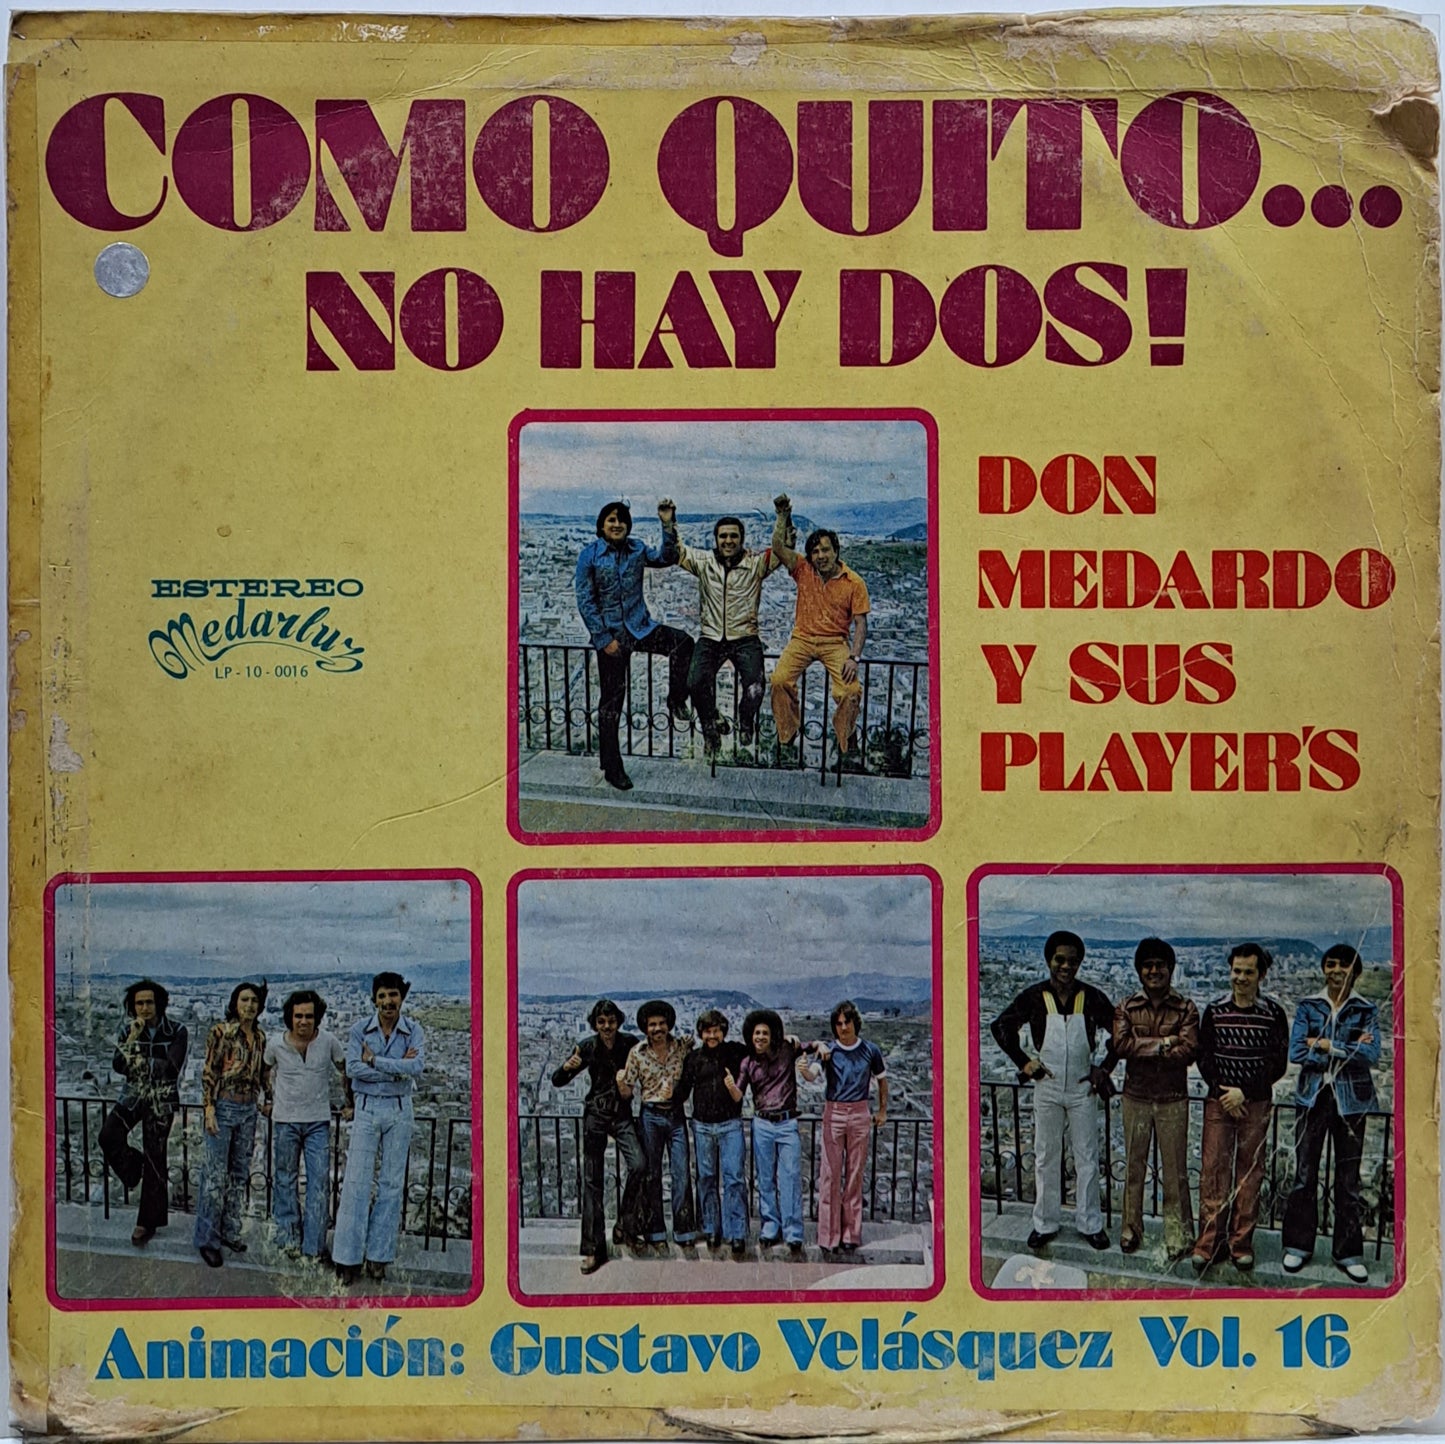 DON MEDARDO Y SUS PLAYERS - COMO QUITO NO HAY DOS  LP